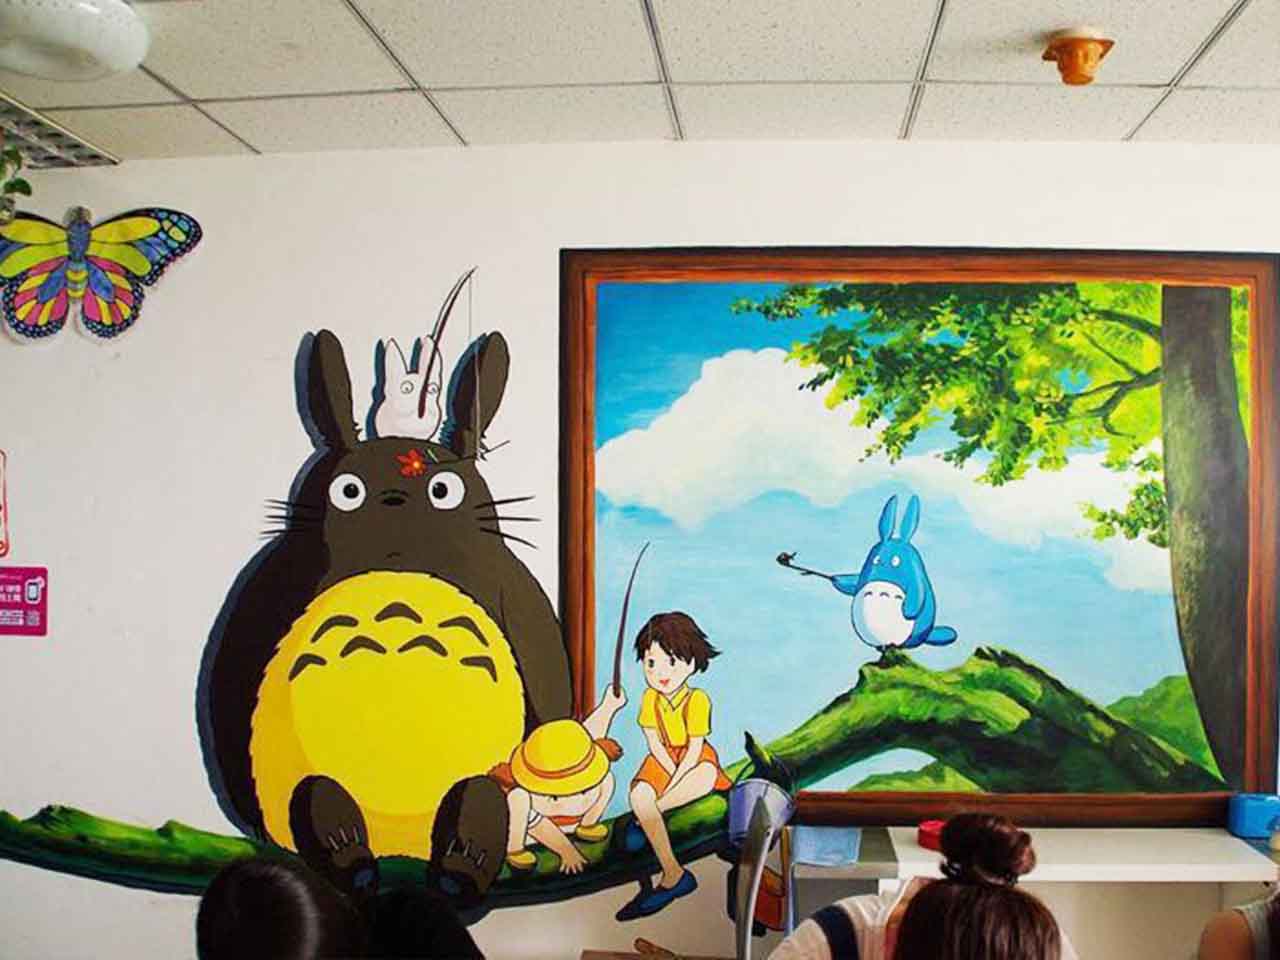 幼儿校园动物园游乐场卡通宫崎骏龙猫墙绘壁画彩绘涂鸦手绘成都澜泉文化